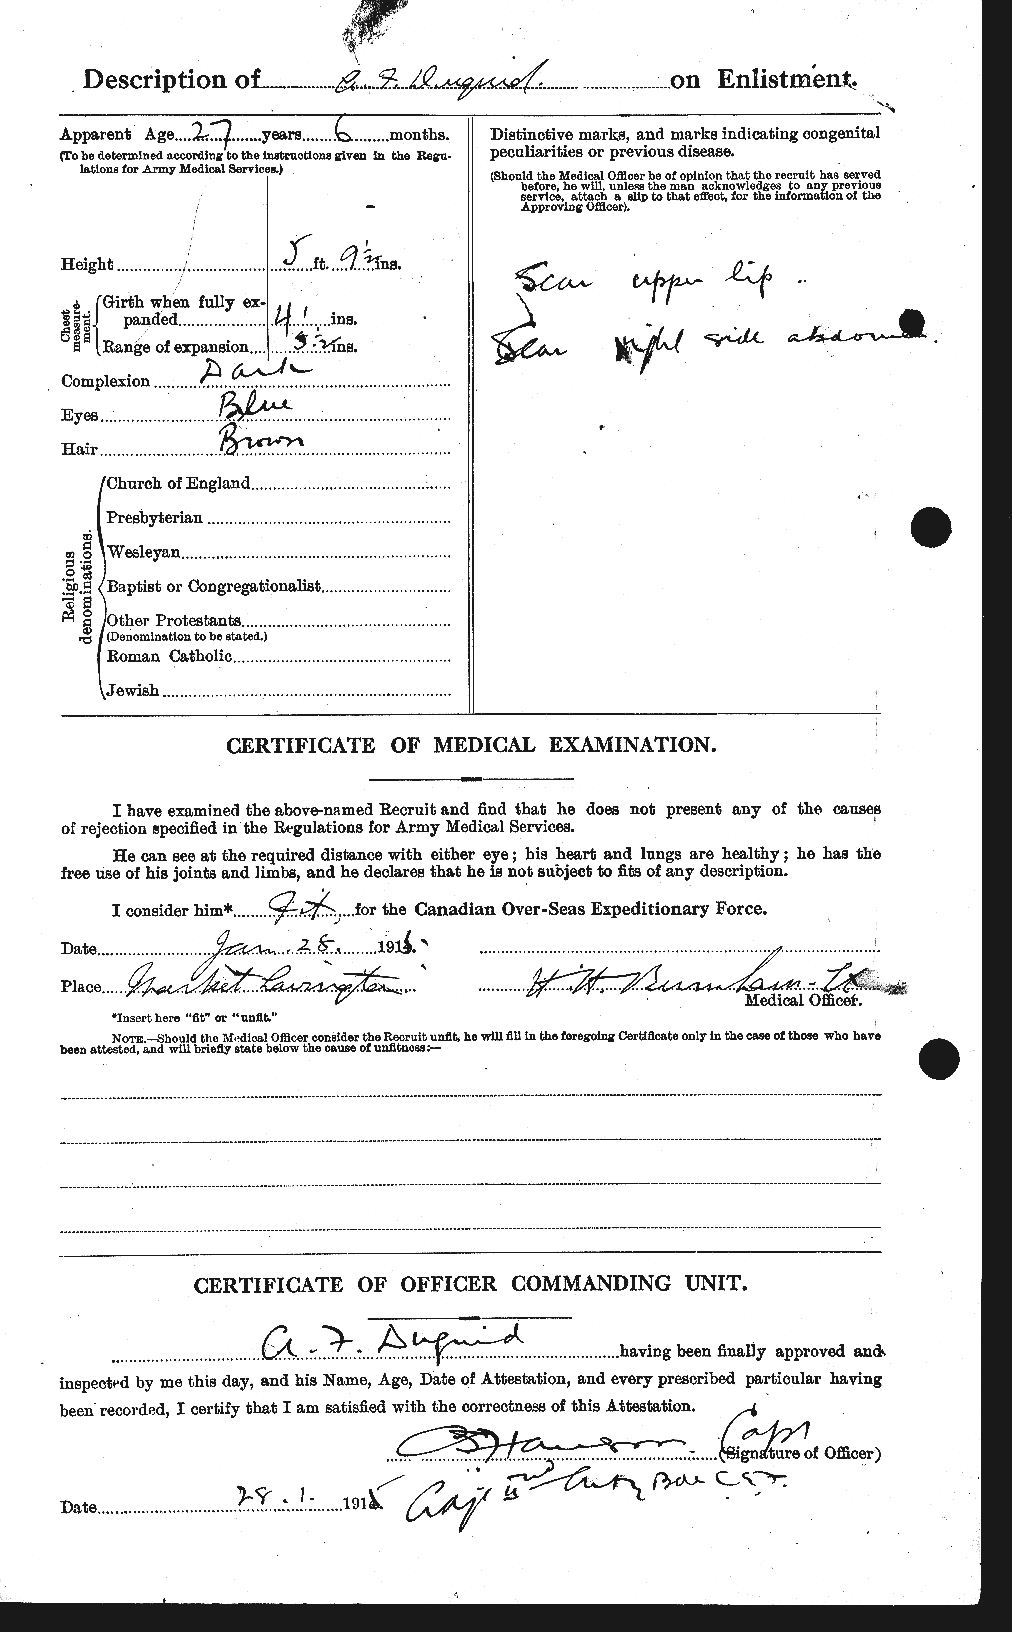 Dossiers du Personnel de la Première Guerre mondiale - CEC 301908b